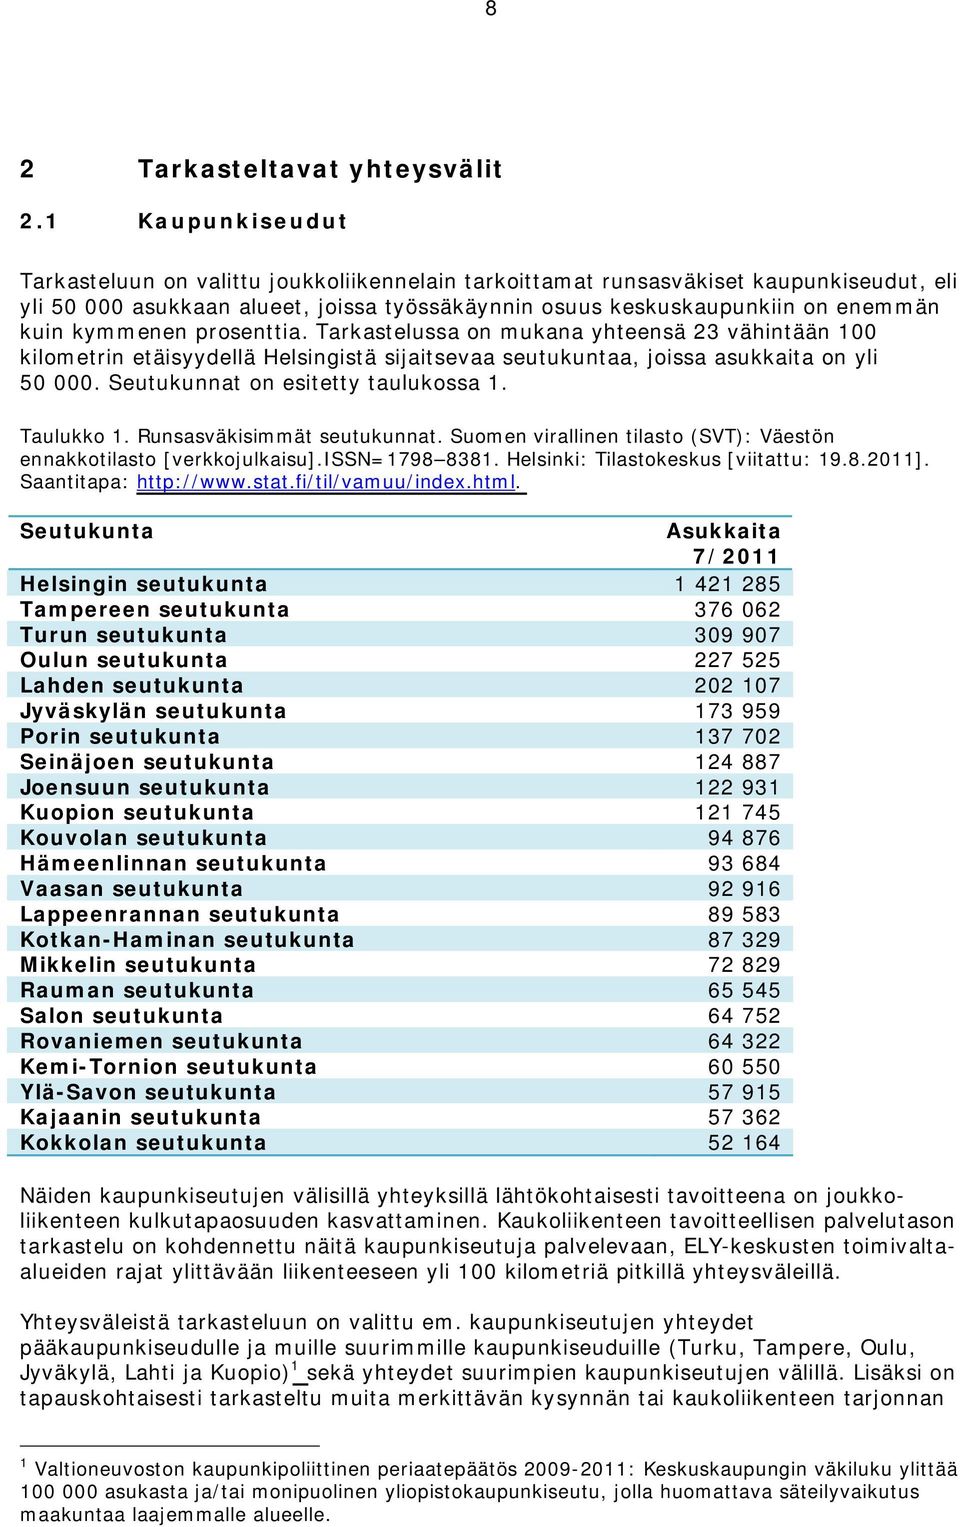 kymmenen prosenttia. Tarkastelussa on mukana yhteensä 23 vähintään 100 kilometrin etäisyydellä Helsingistä sijaitsevaa seutukuntaa, joissa asukkaita on yli 50 000.